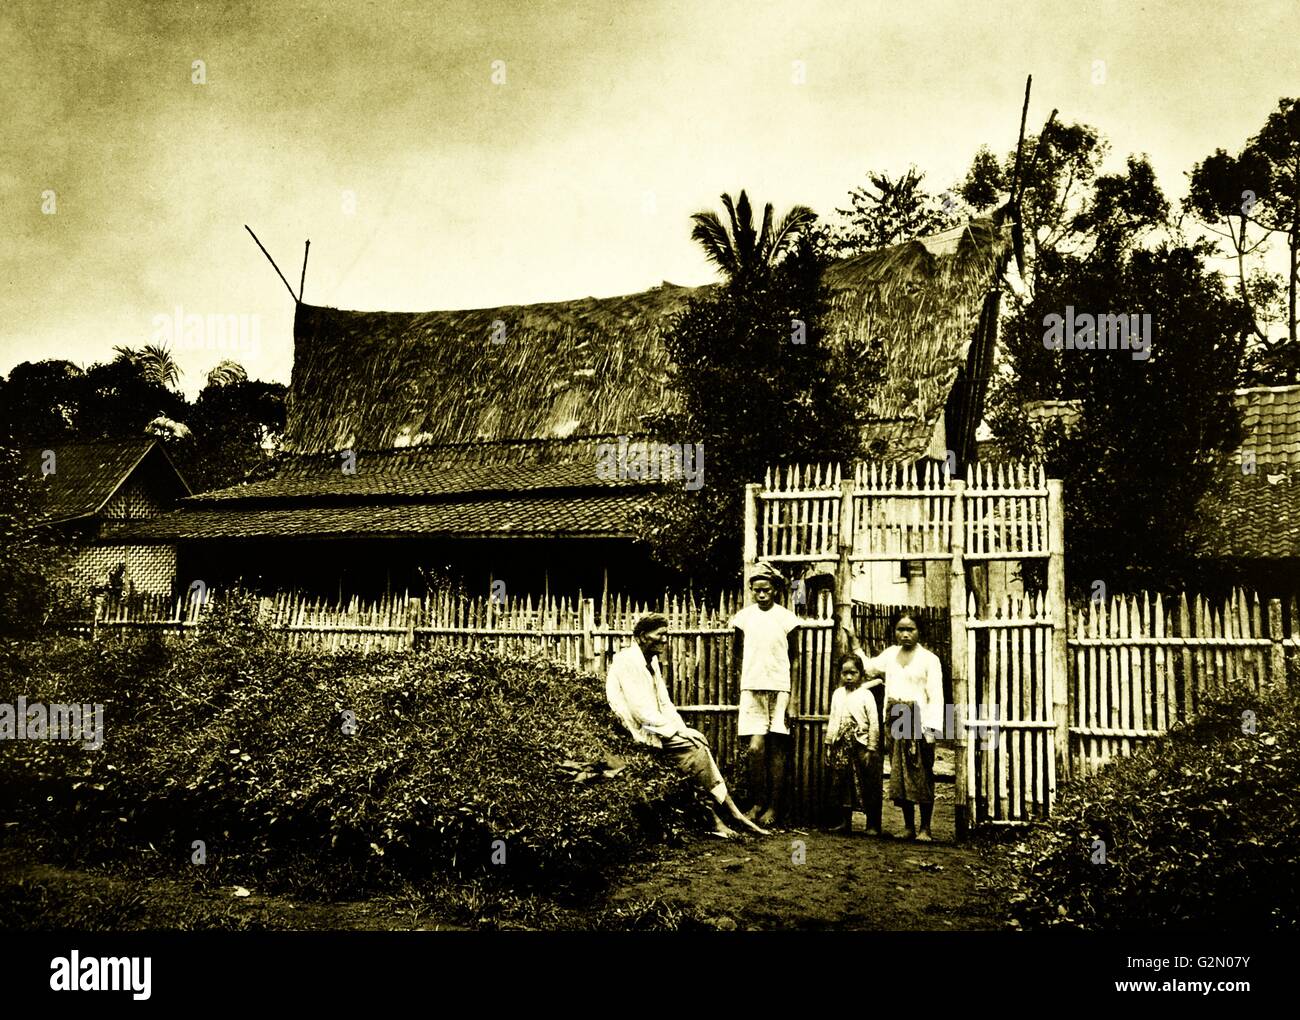 La fotografia mostra un gruppo gli abitanti del villaggio si fermò al di fuori di un recintata village. Le Indie orientali olandesi, noto come Indonesia moderna. Datata c1935. Foto Stock